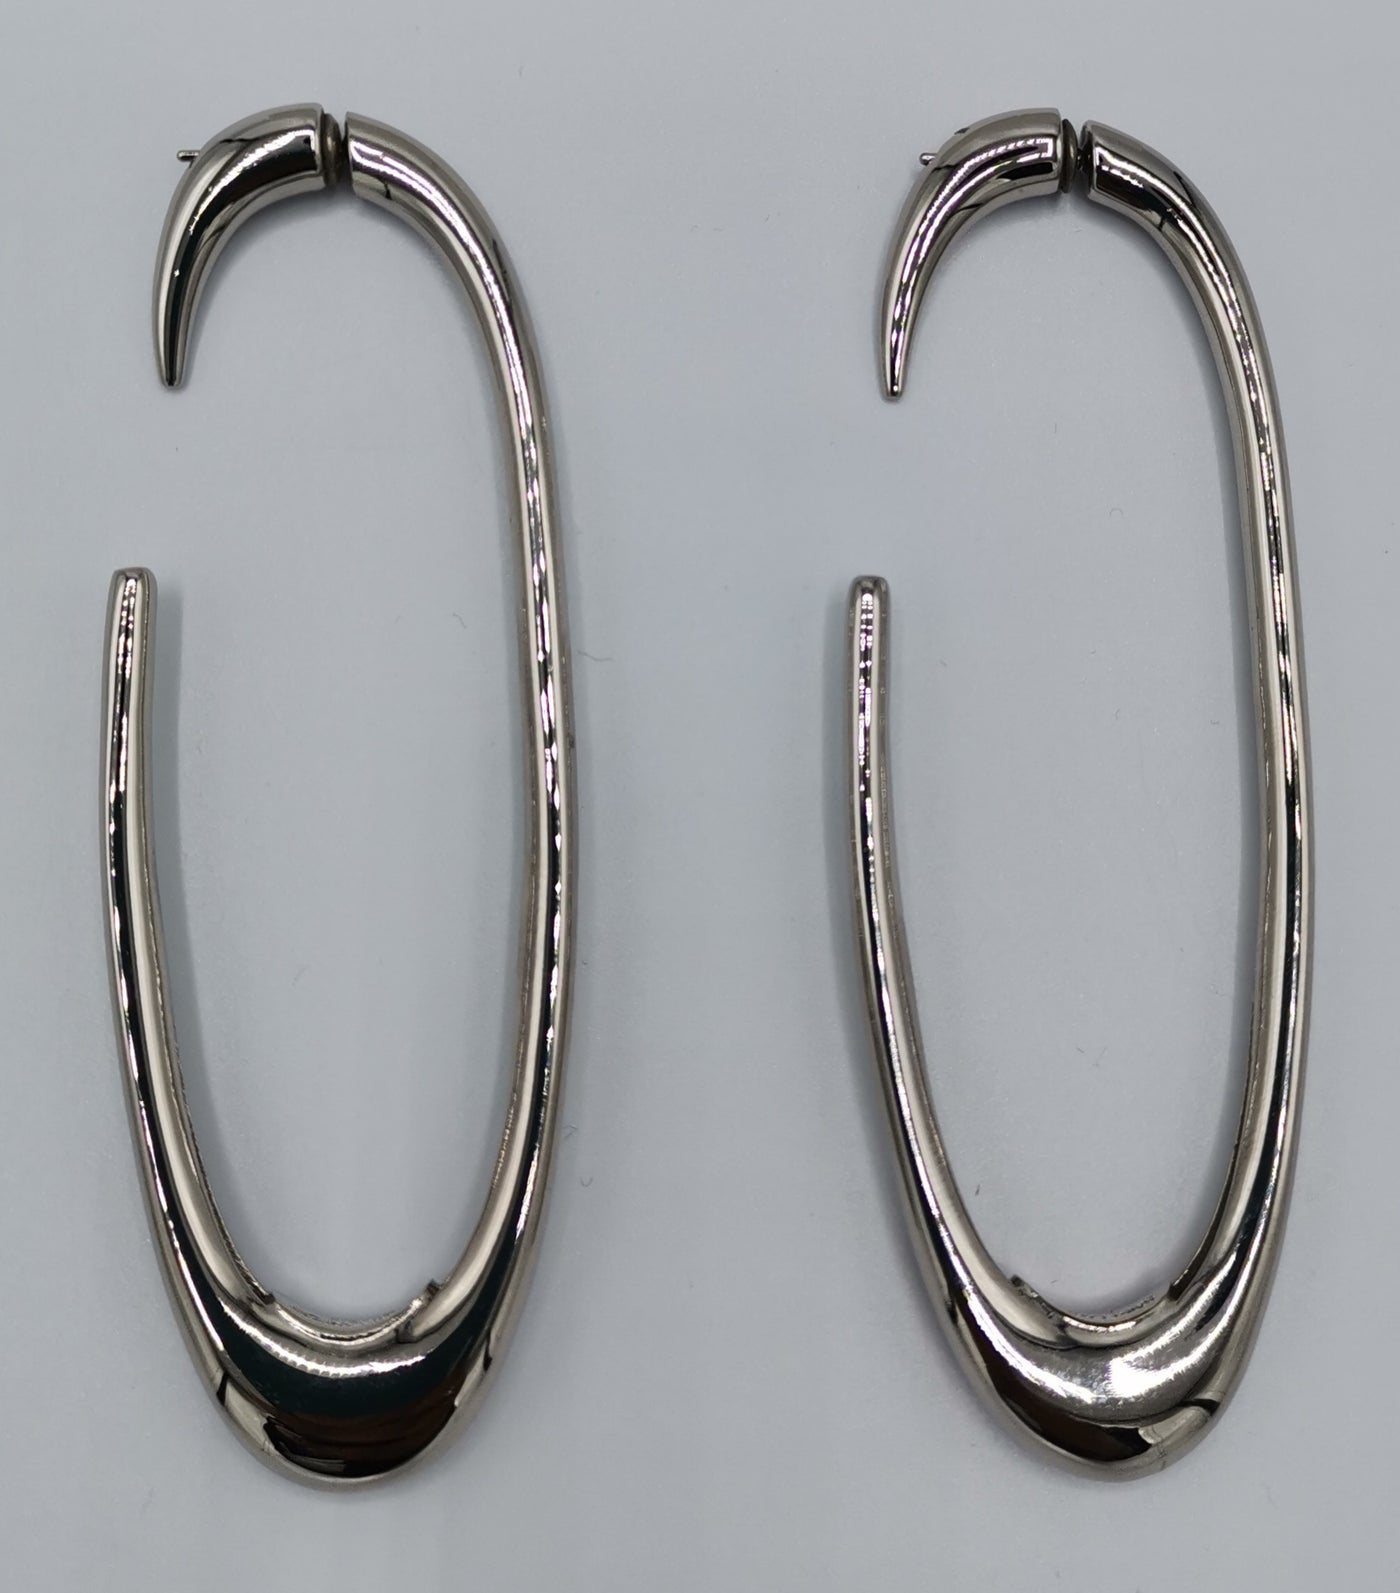 Saint Laurent silver hoops earrings rrp $495